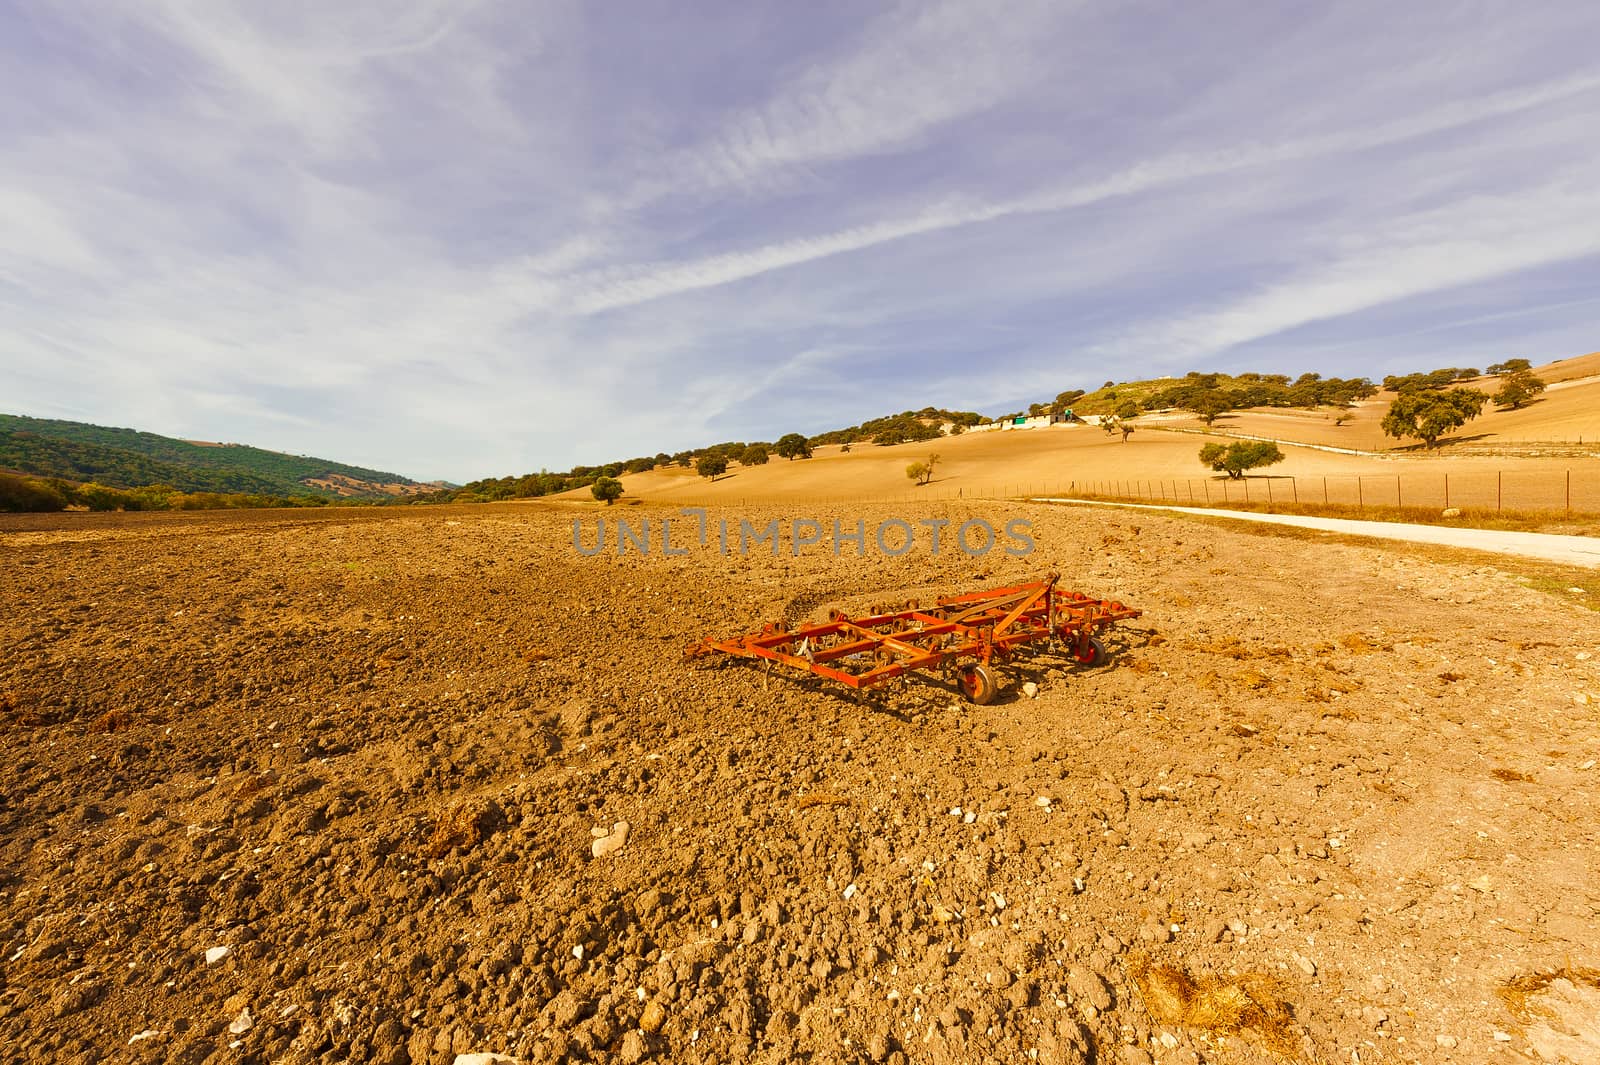 Landscape with Harrow on the Plowed Field in Spain